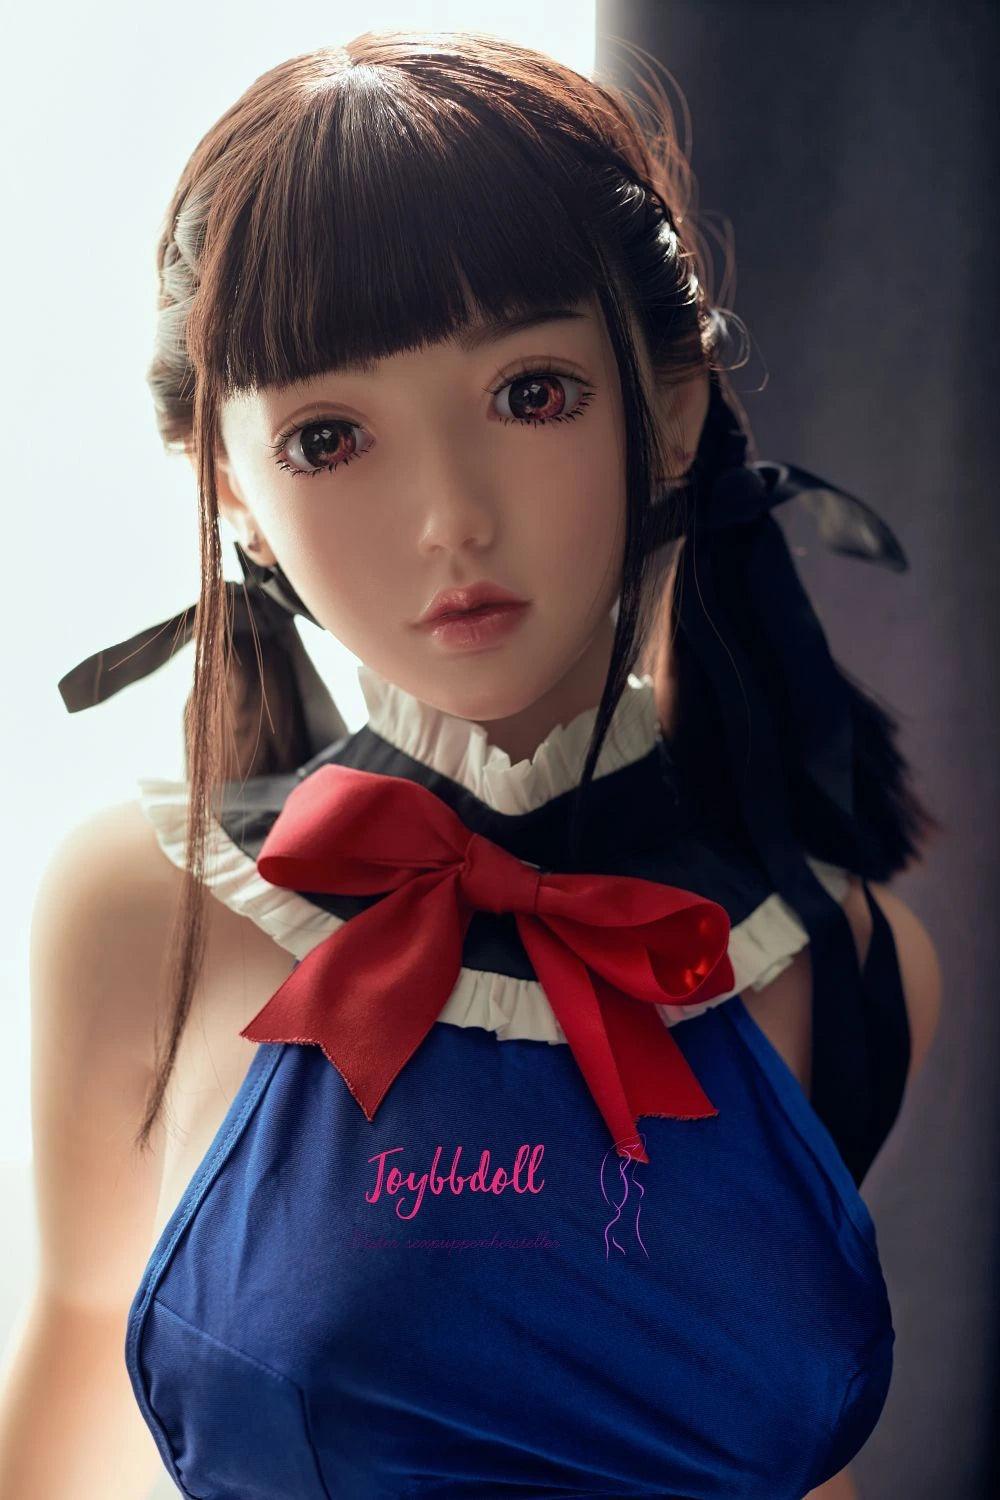 Ola-Hübsches Anime-Girl(18 Jahre) - Joybbdoll-CST Doll